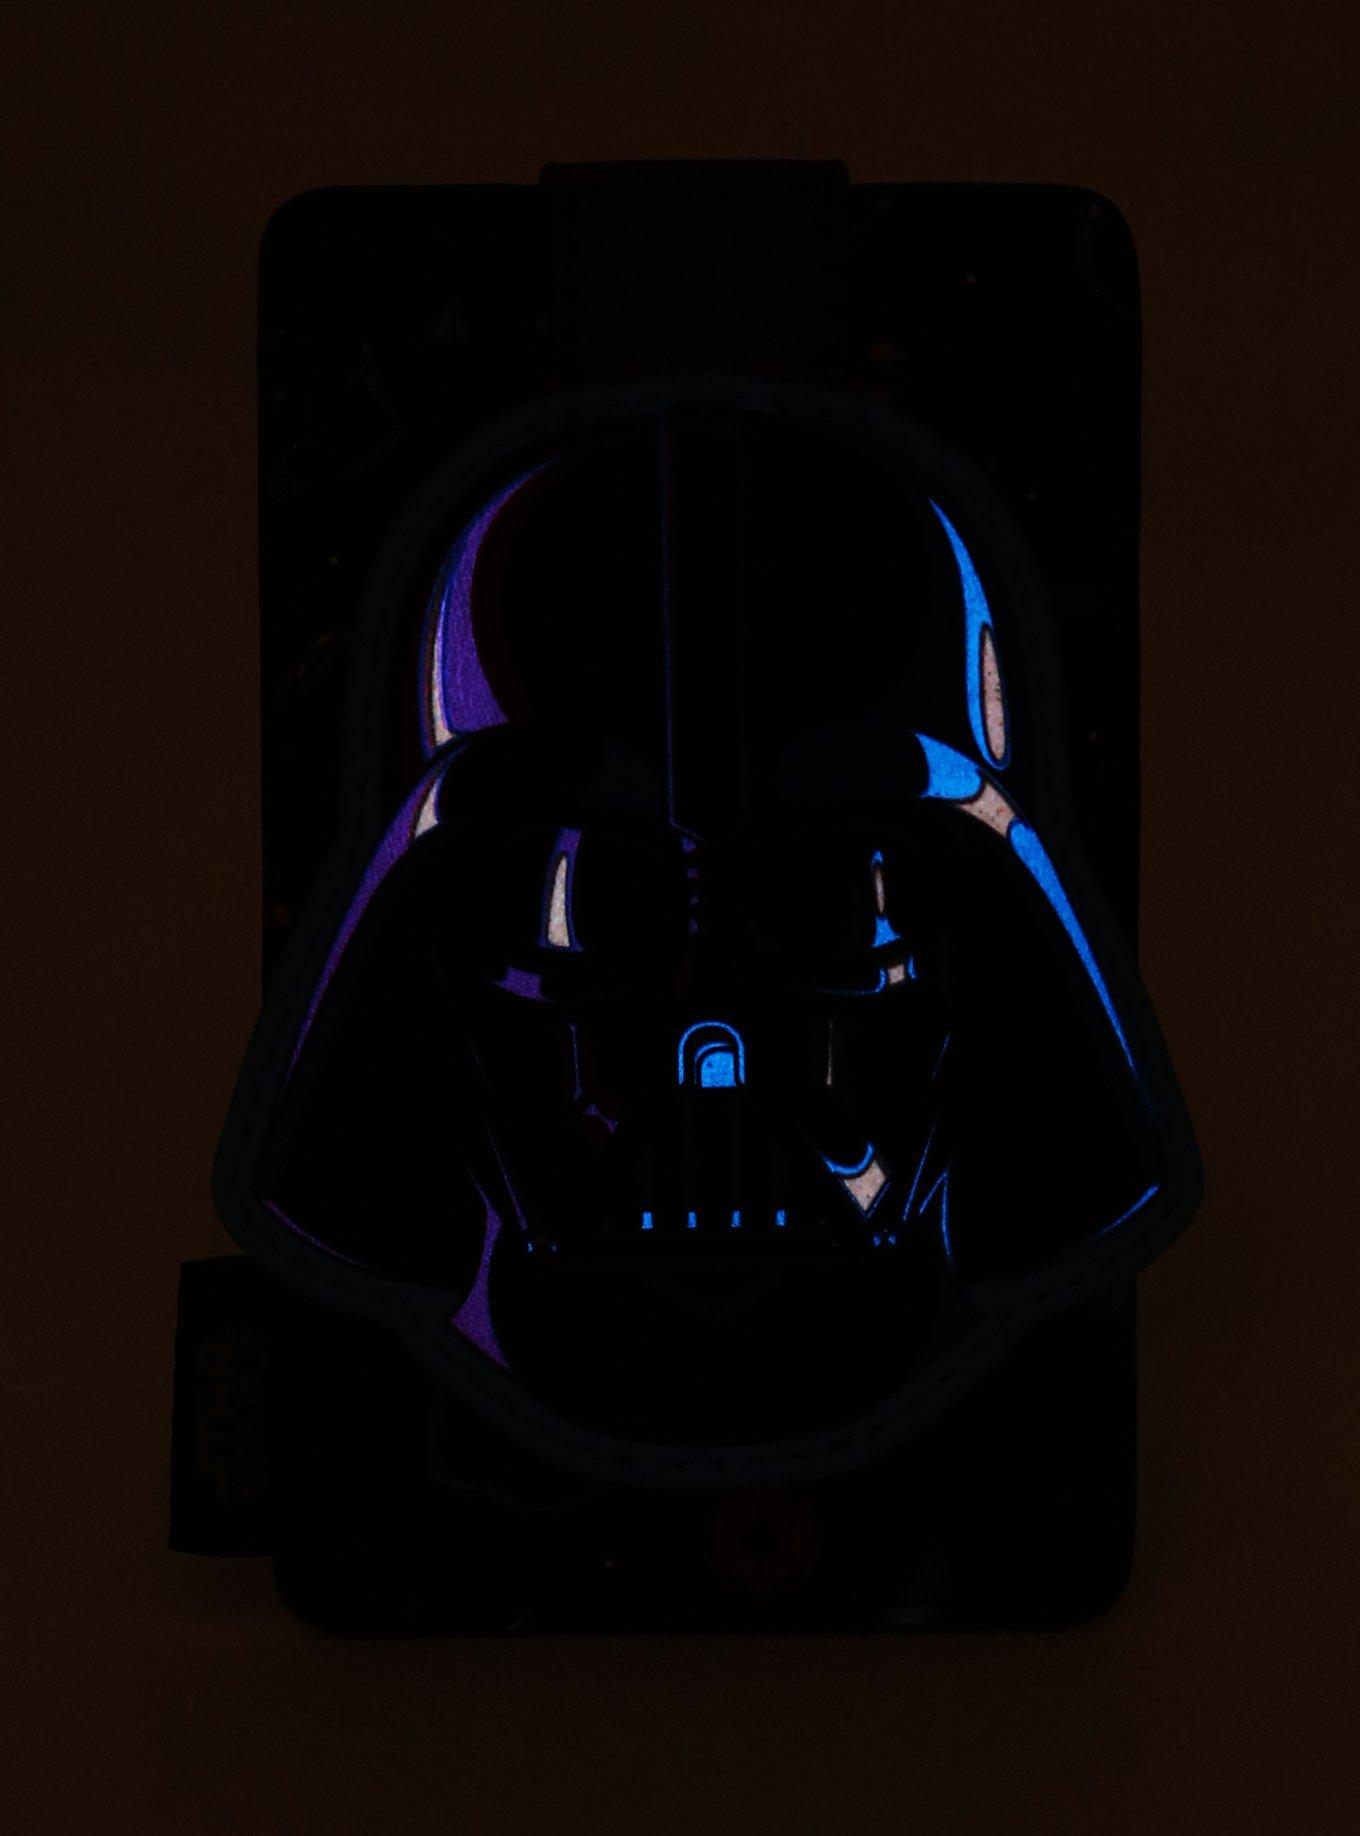 Loungefly Star Wars Darth Vader Dark Side Cardholder - BoxLunch Exclusive, , alternate